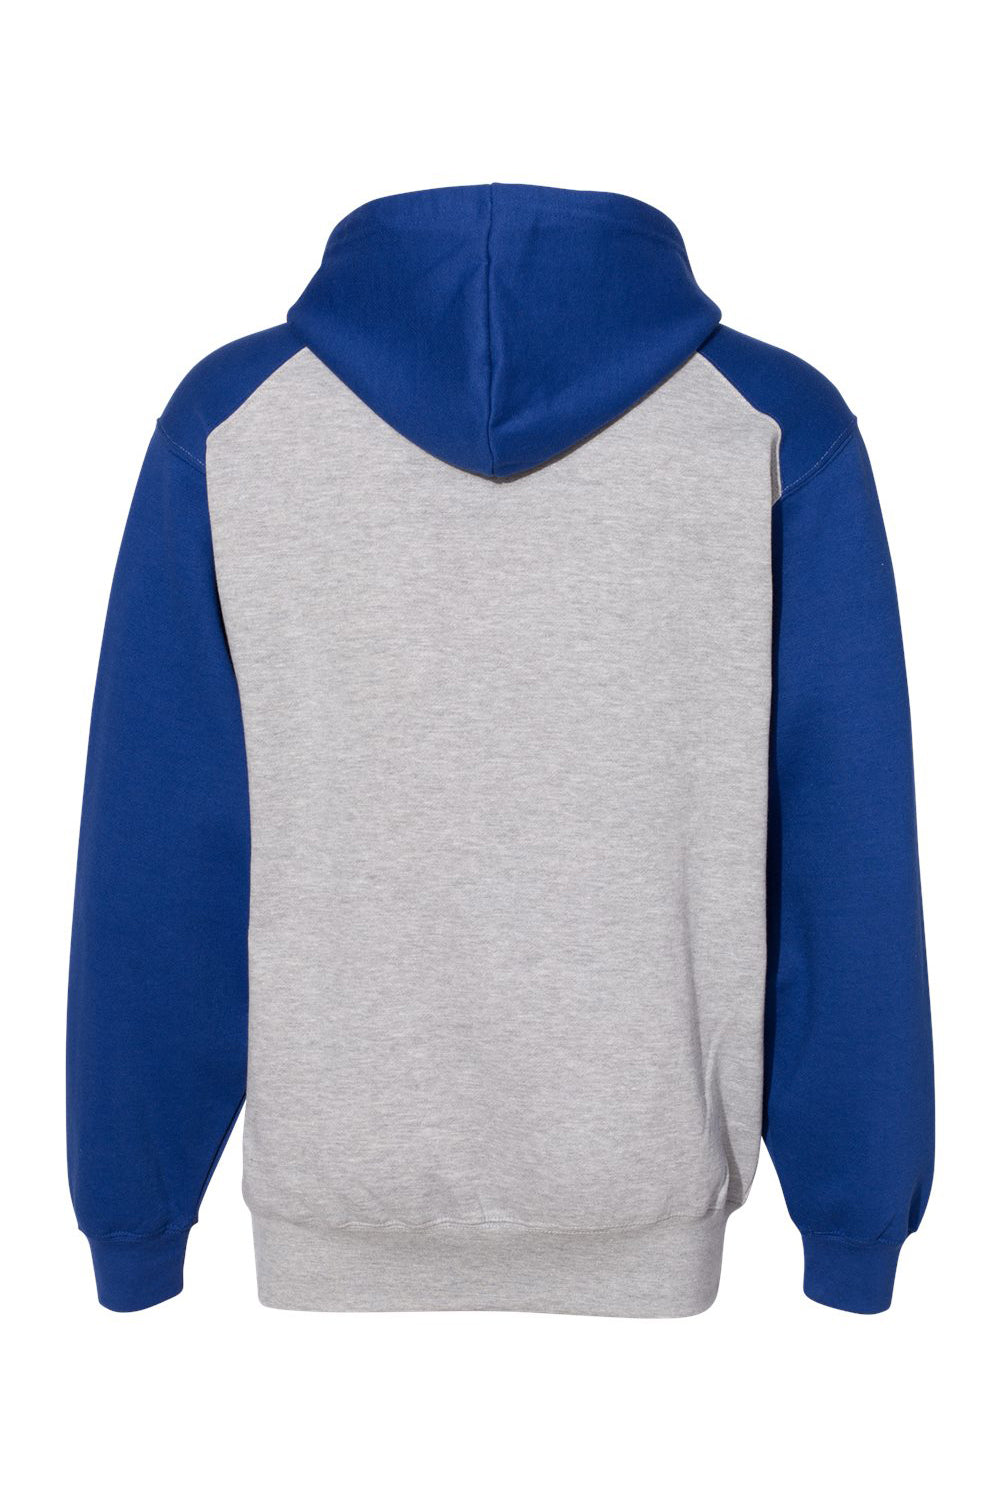 Badger 1249 Mens Athletic Fleece Hooded Sweatshirt Hoodie Oxford Grey/Royal Blue Flat Back